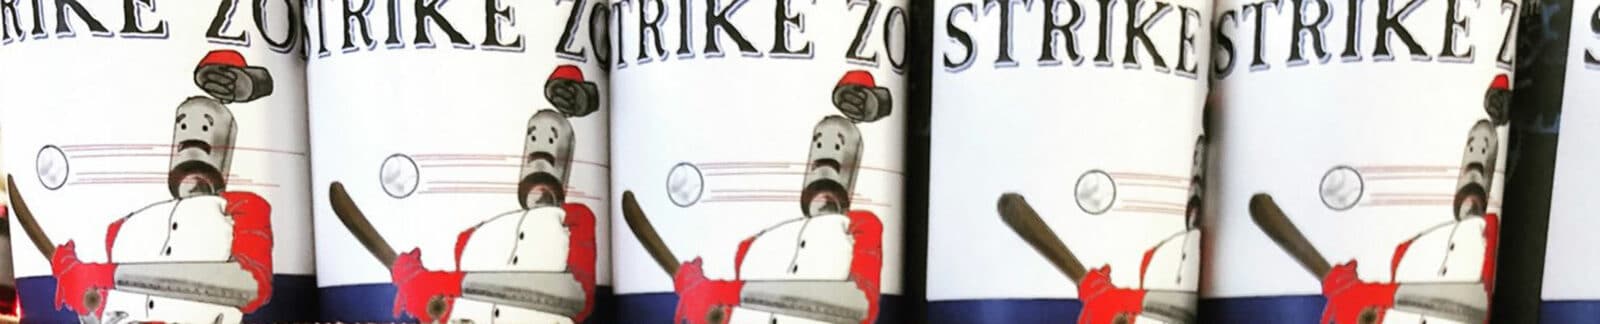 Strike Zone Blonde Ale header